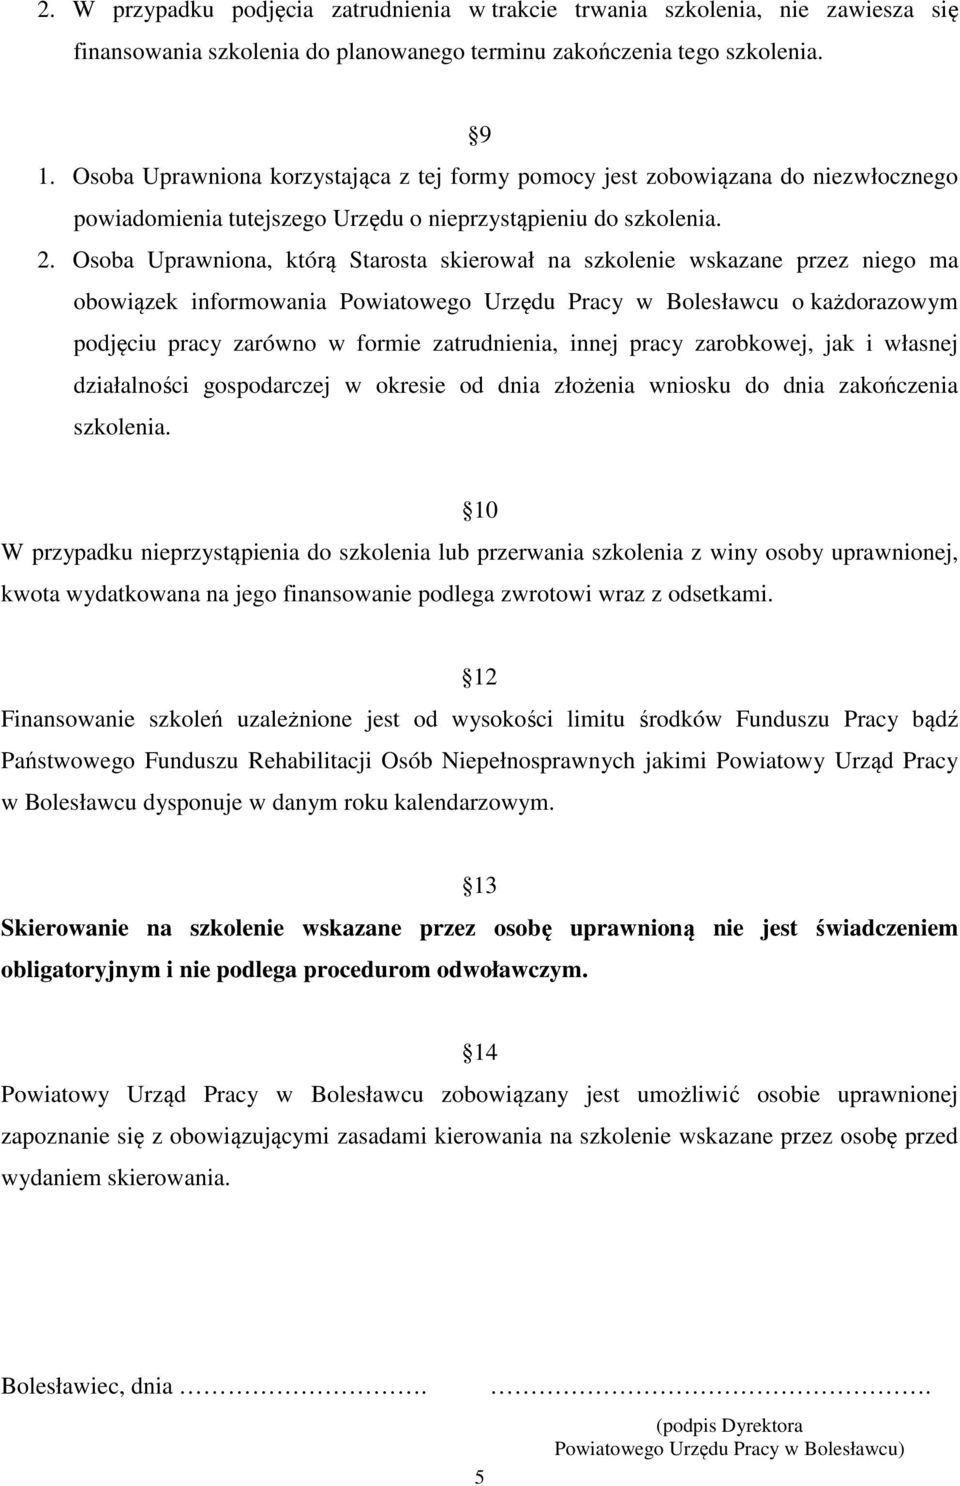 Osoba Uprawniona, którą Starosta skierował na szkolenie wskazane przez niego ma obowiązek informowania Powiatowego Urzędu Pracy w Bolesławcu o każdorazowym podjęciu pracy zarówno w formie